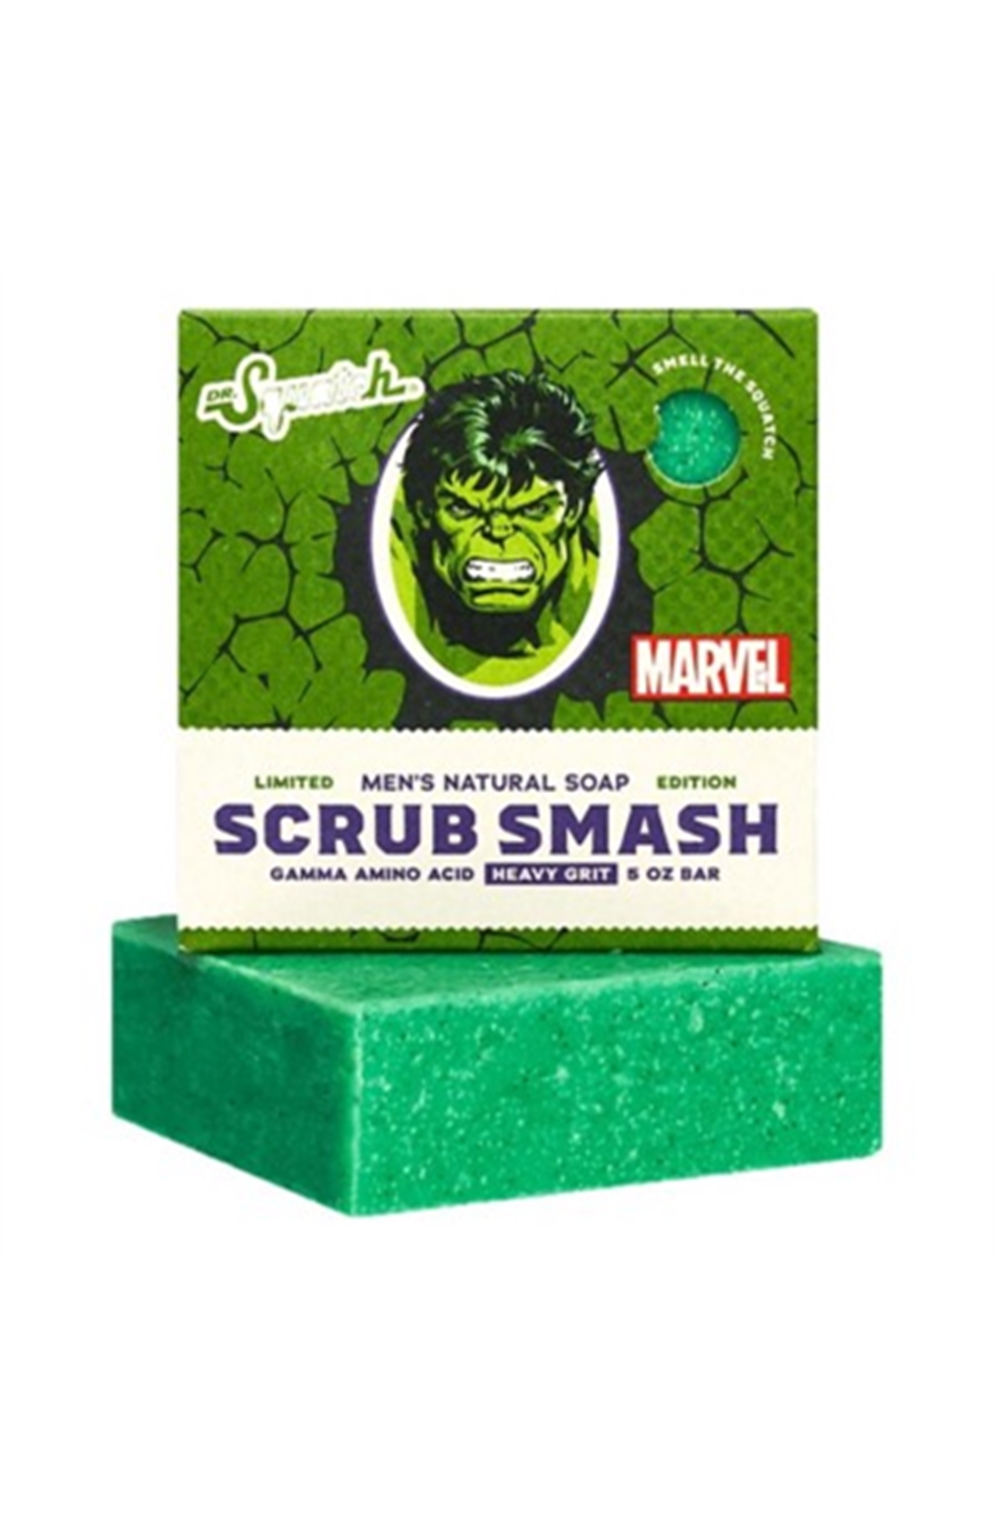 Dr Squatch Scrub Smash Bar Soap